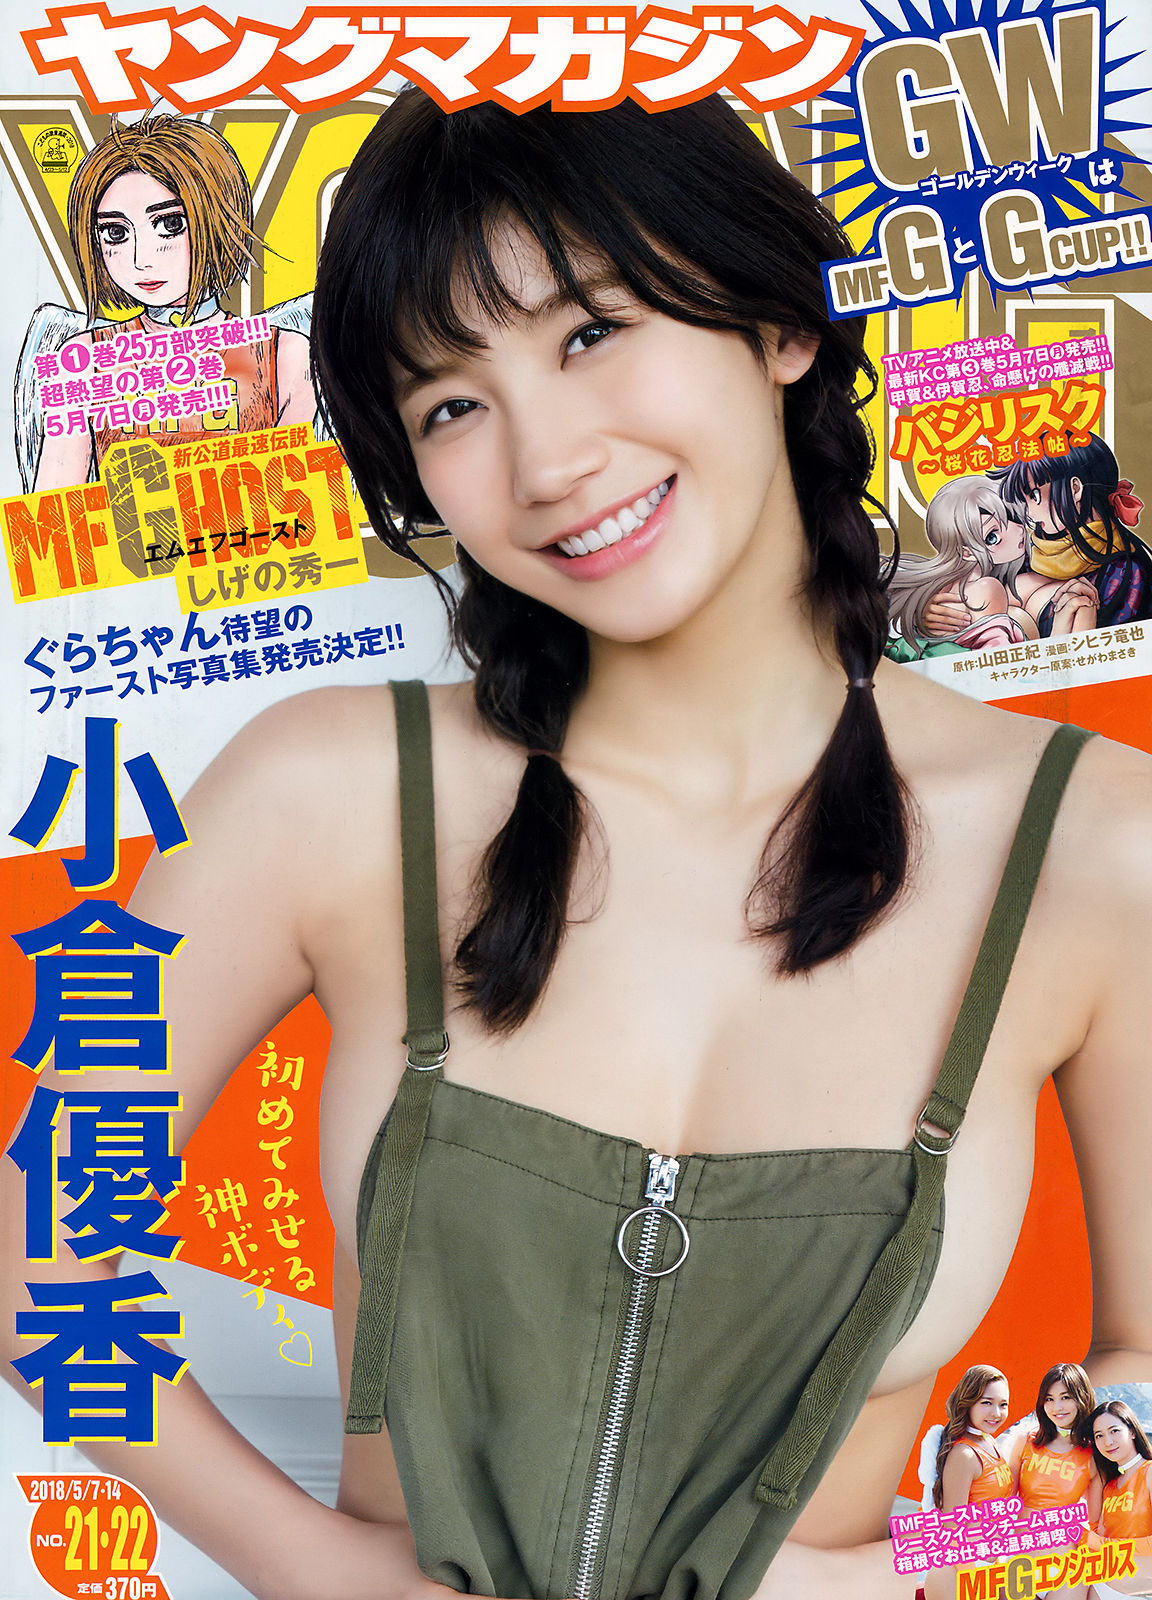 [Young Magazine]日本嫩模:小仓优香(小倉優香)无删减私房写真传疯了(12P)